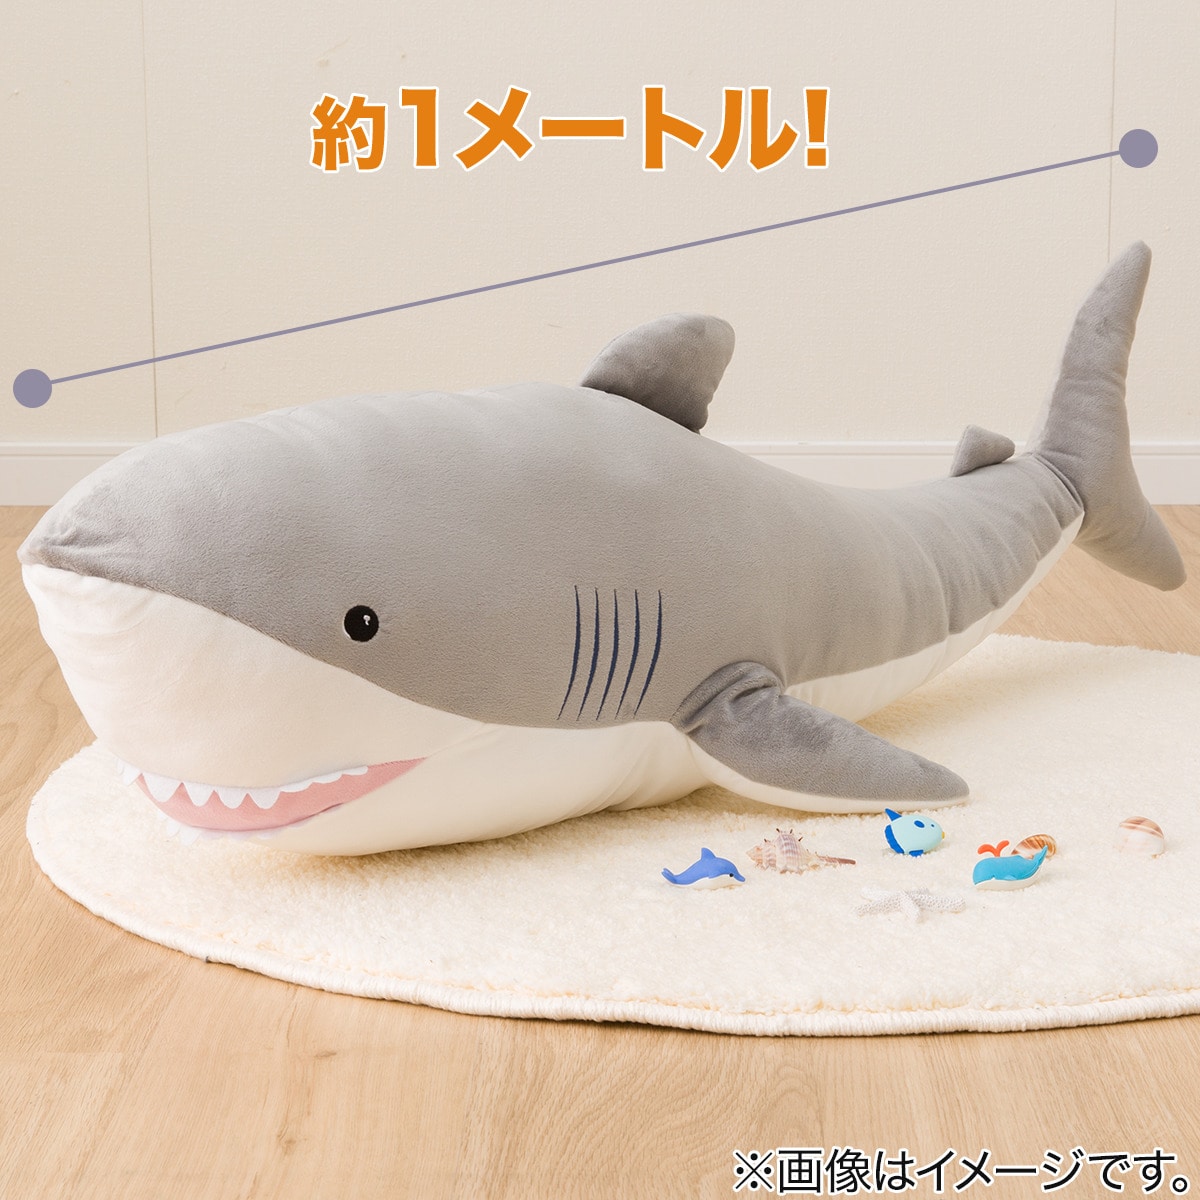 ヌイグルミ(サメ SF01n-s)通販 ニトリネット【公式】 家具・インテリア通販